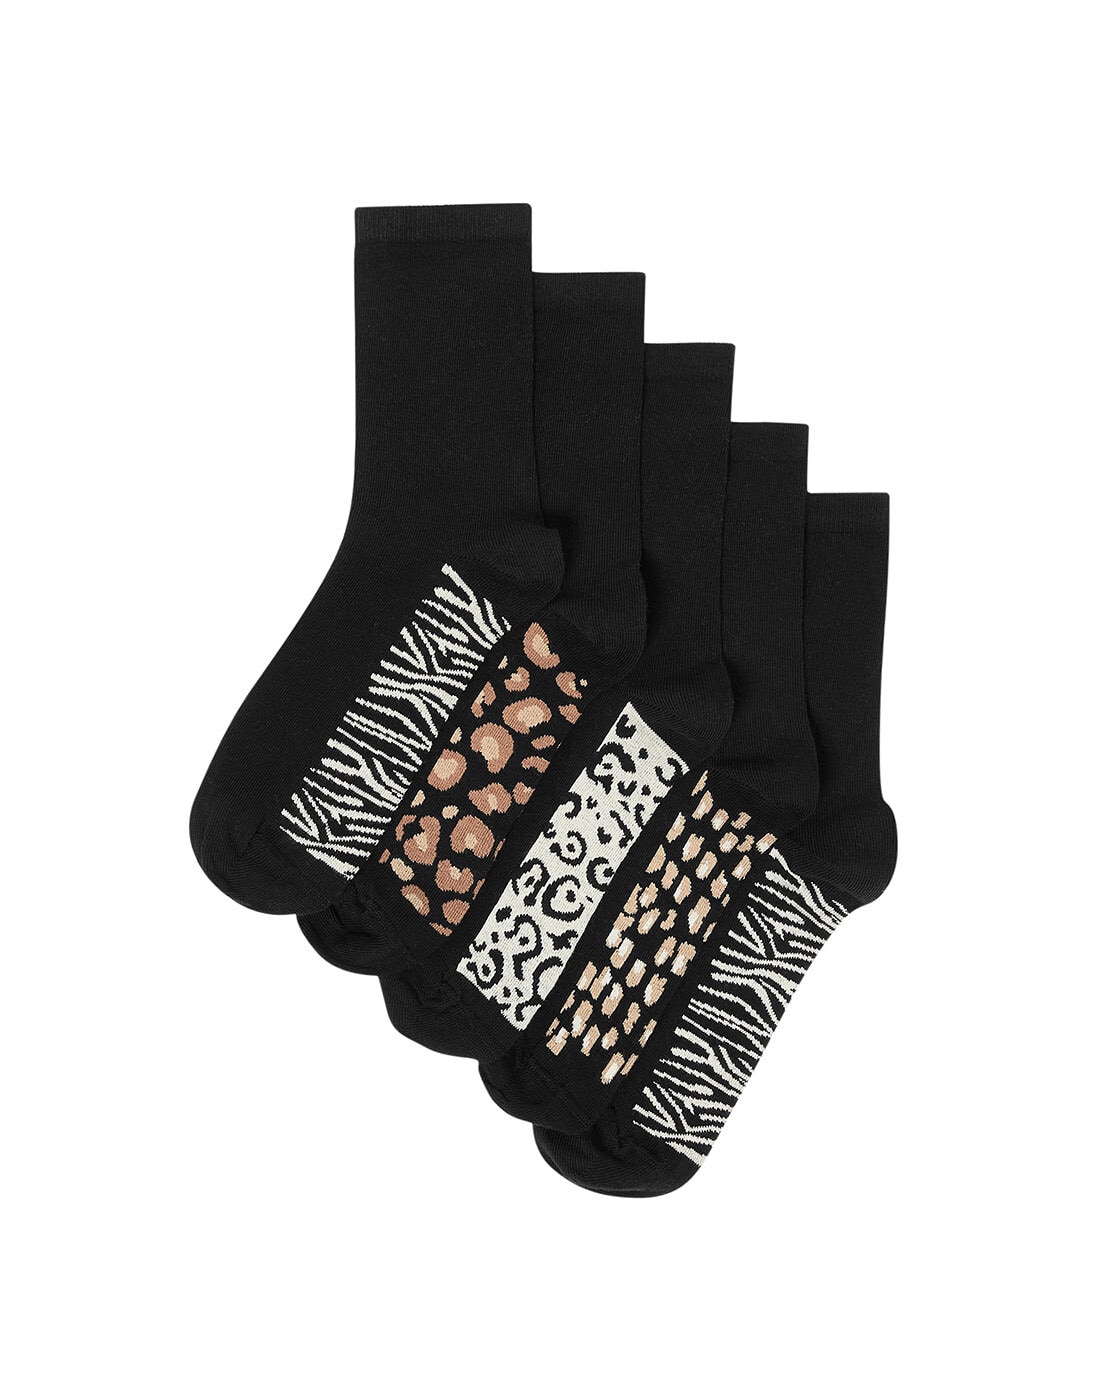 Buy Black Socks & Stockings for Women by Marks & Spencer Online